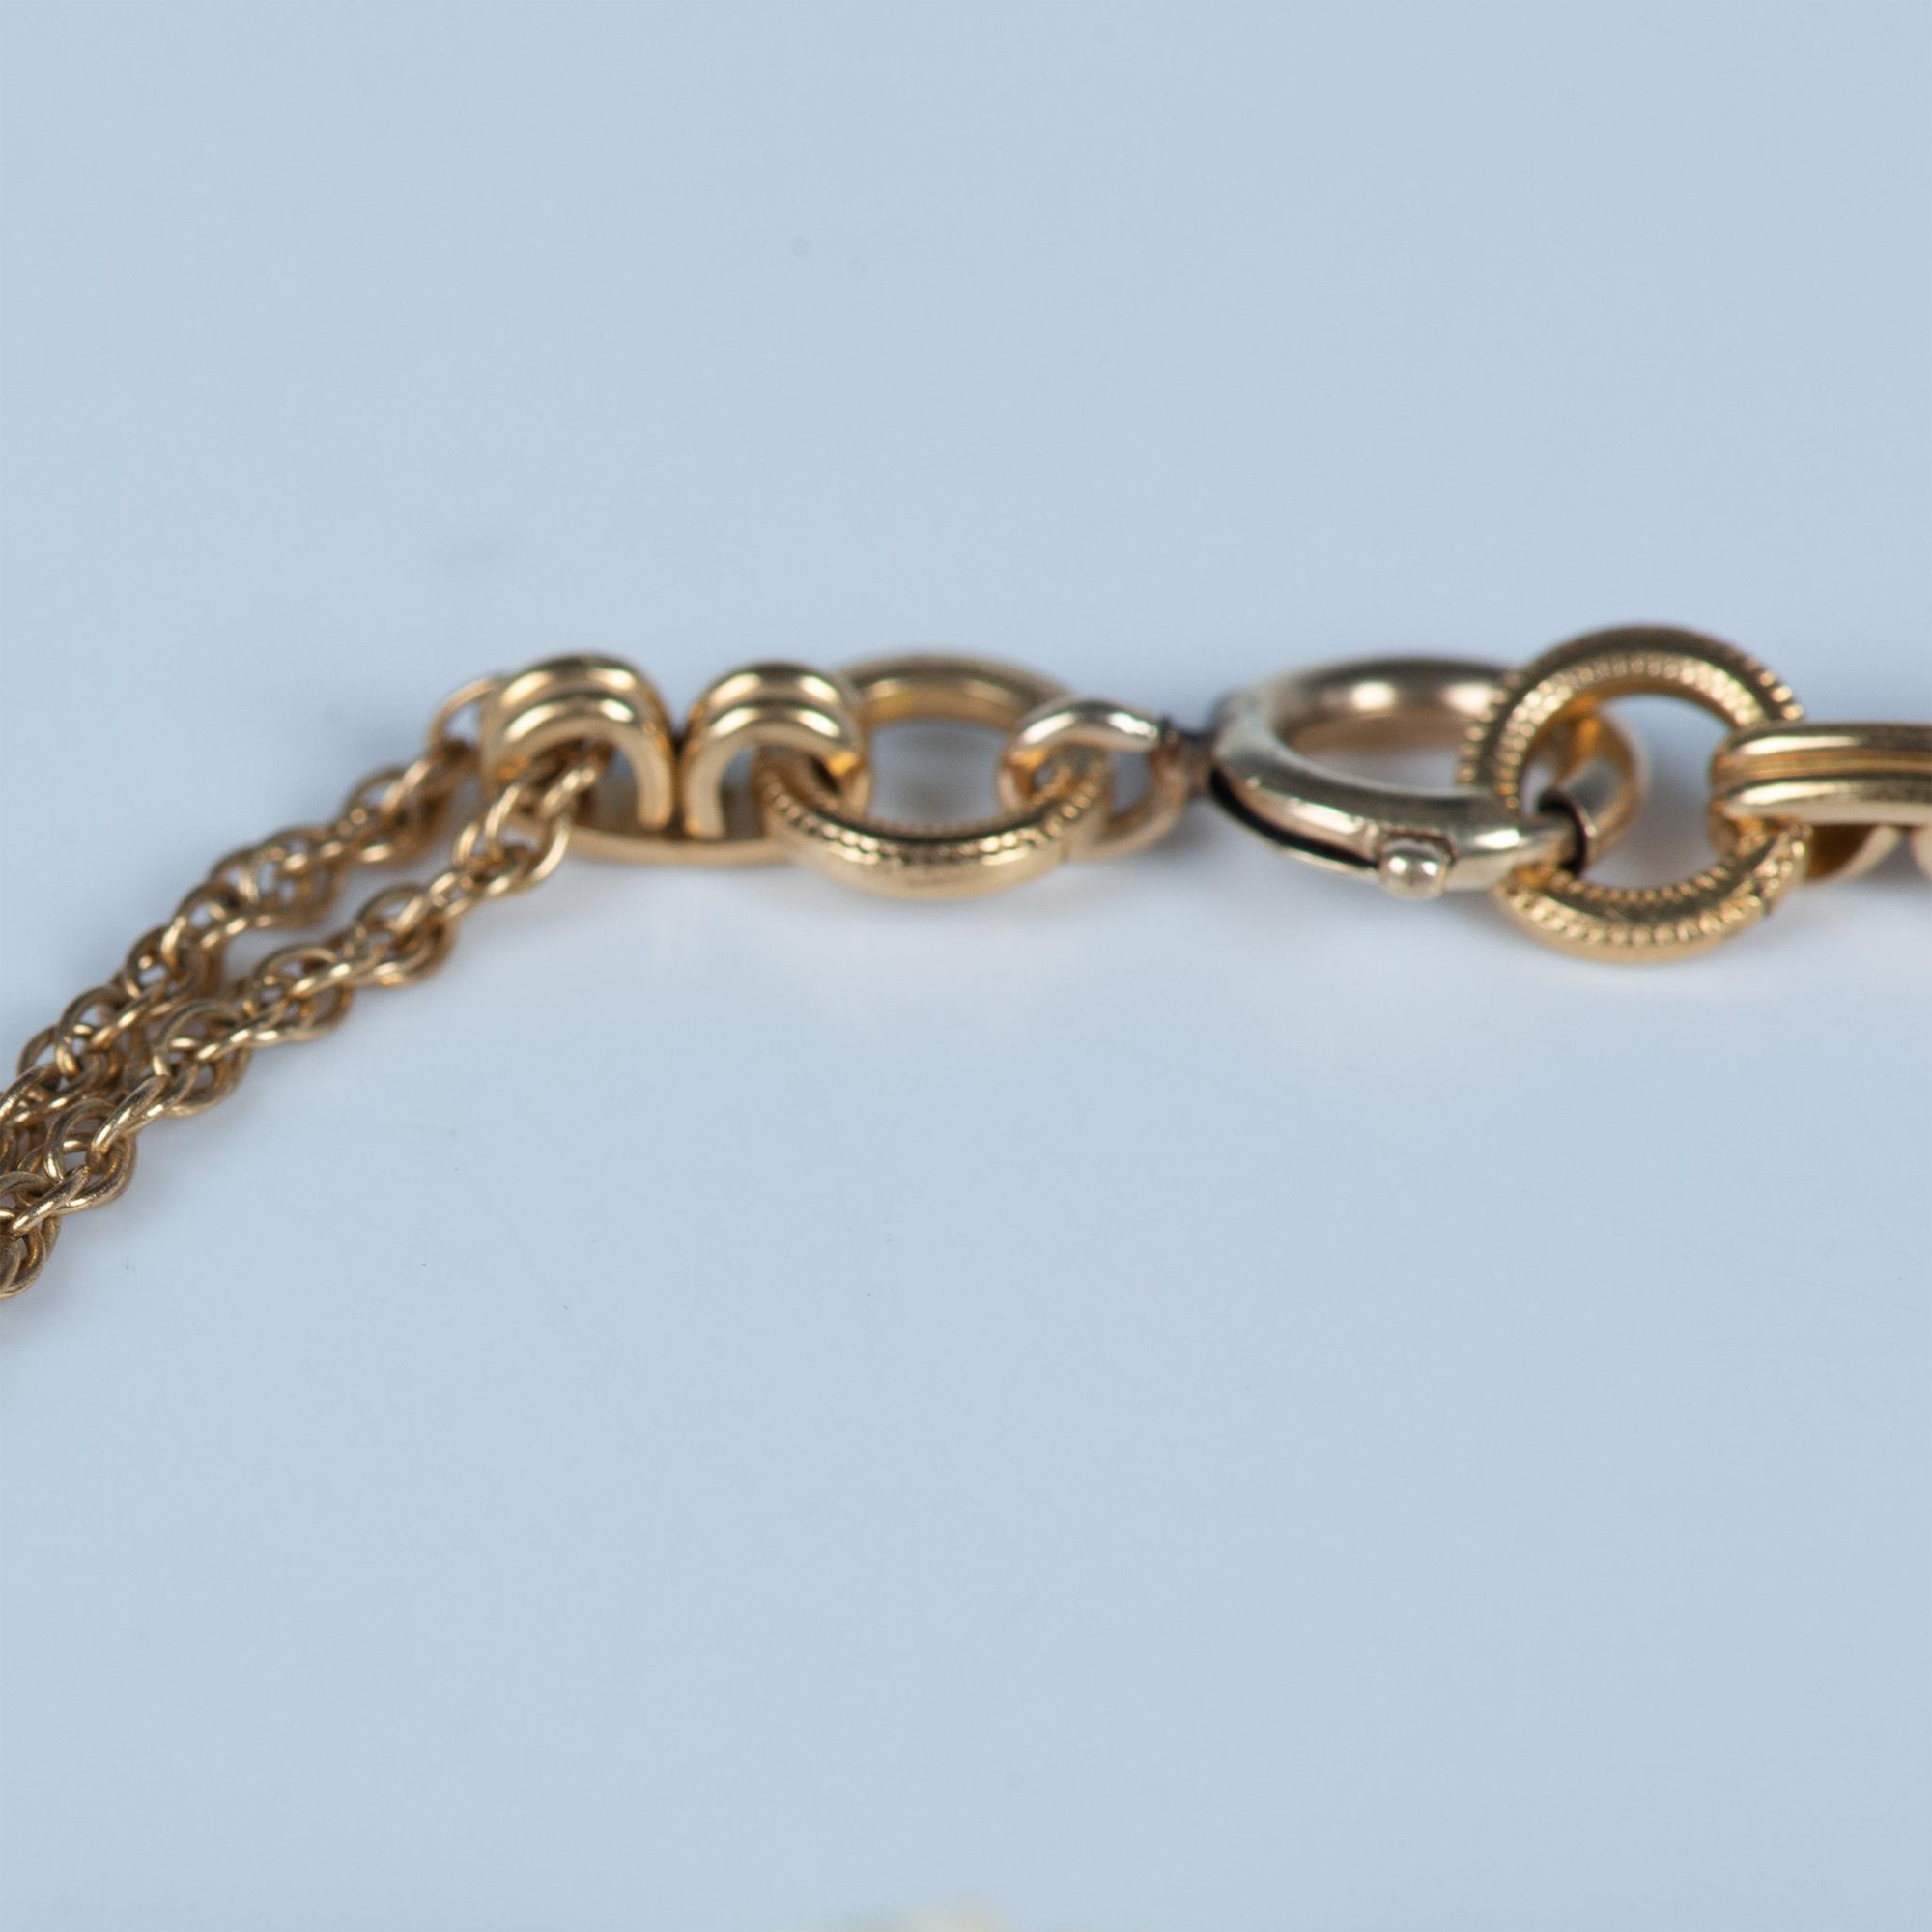 2p Vintage Gold-Filled Necklace & Bracelet with Bone Flowers - Image 4 of 6